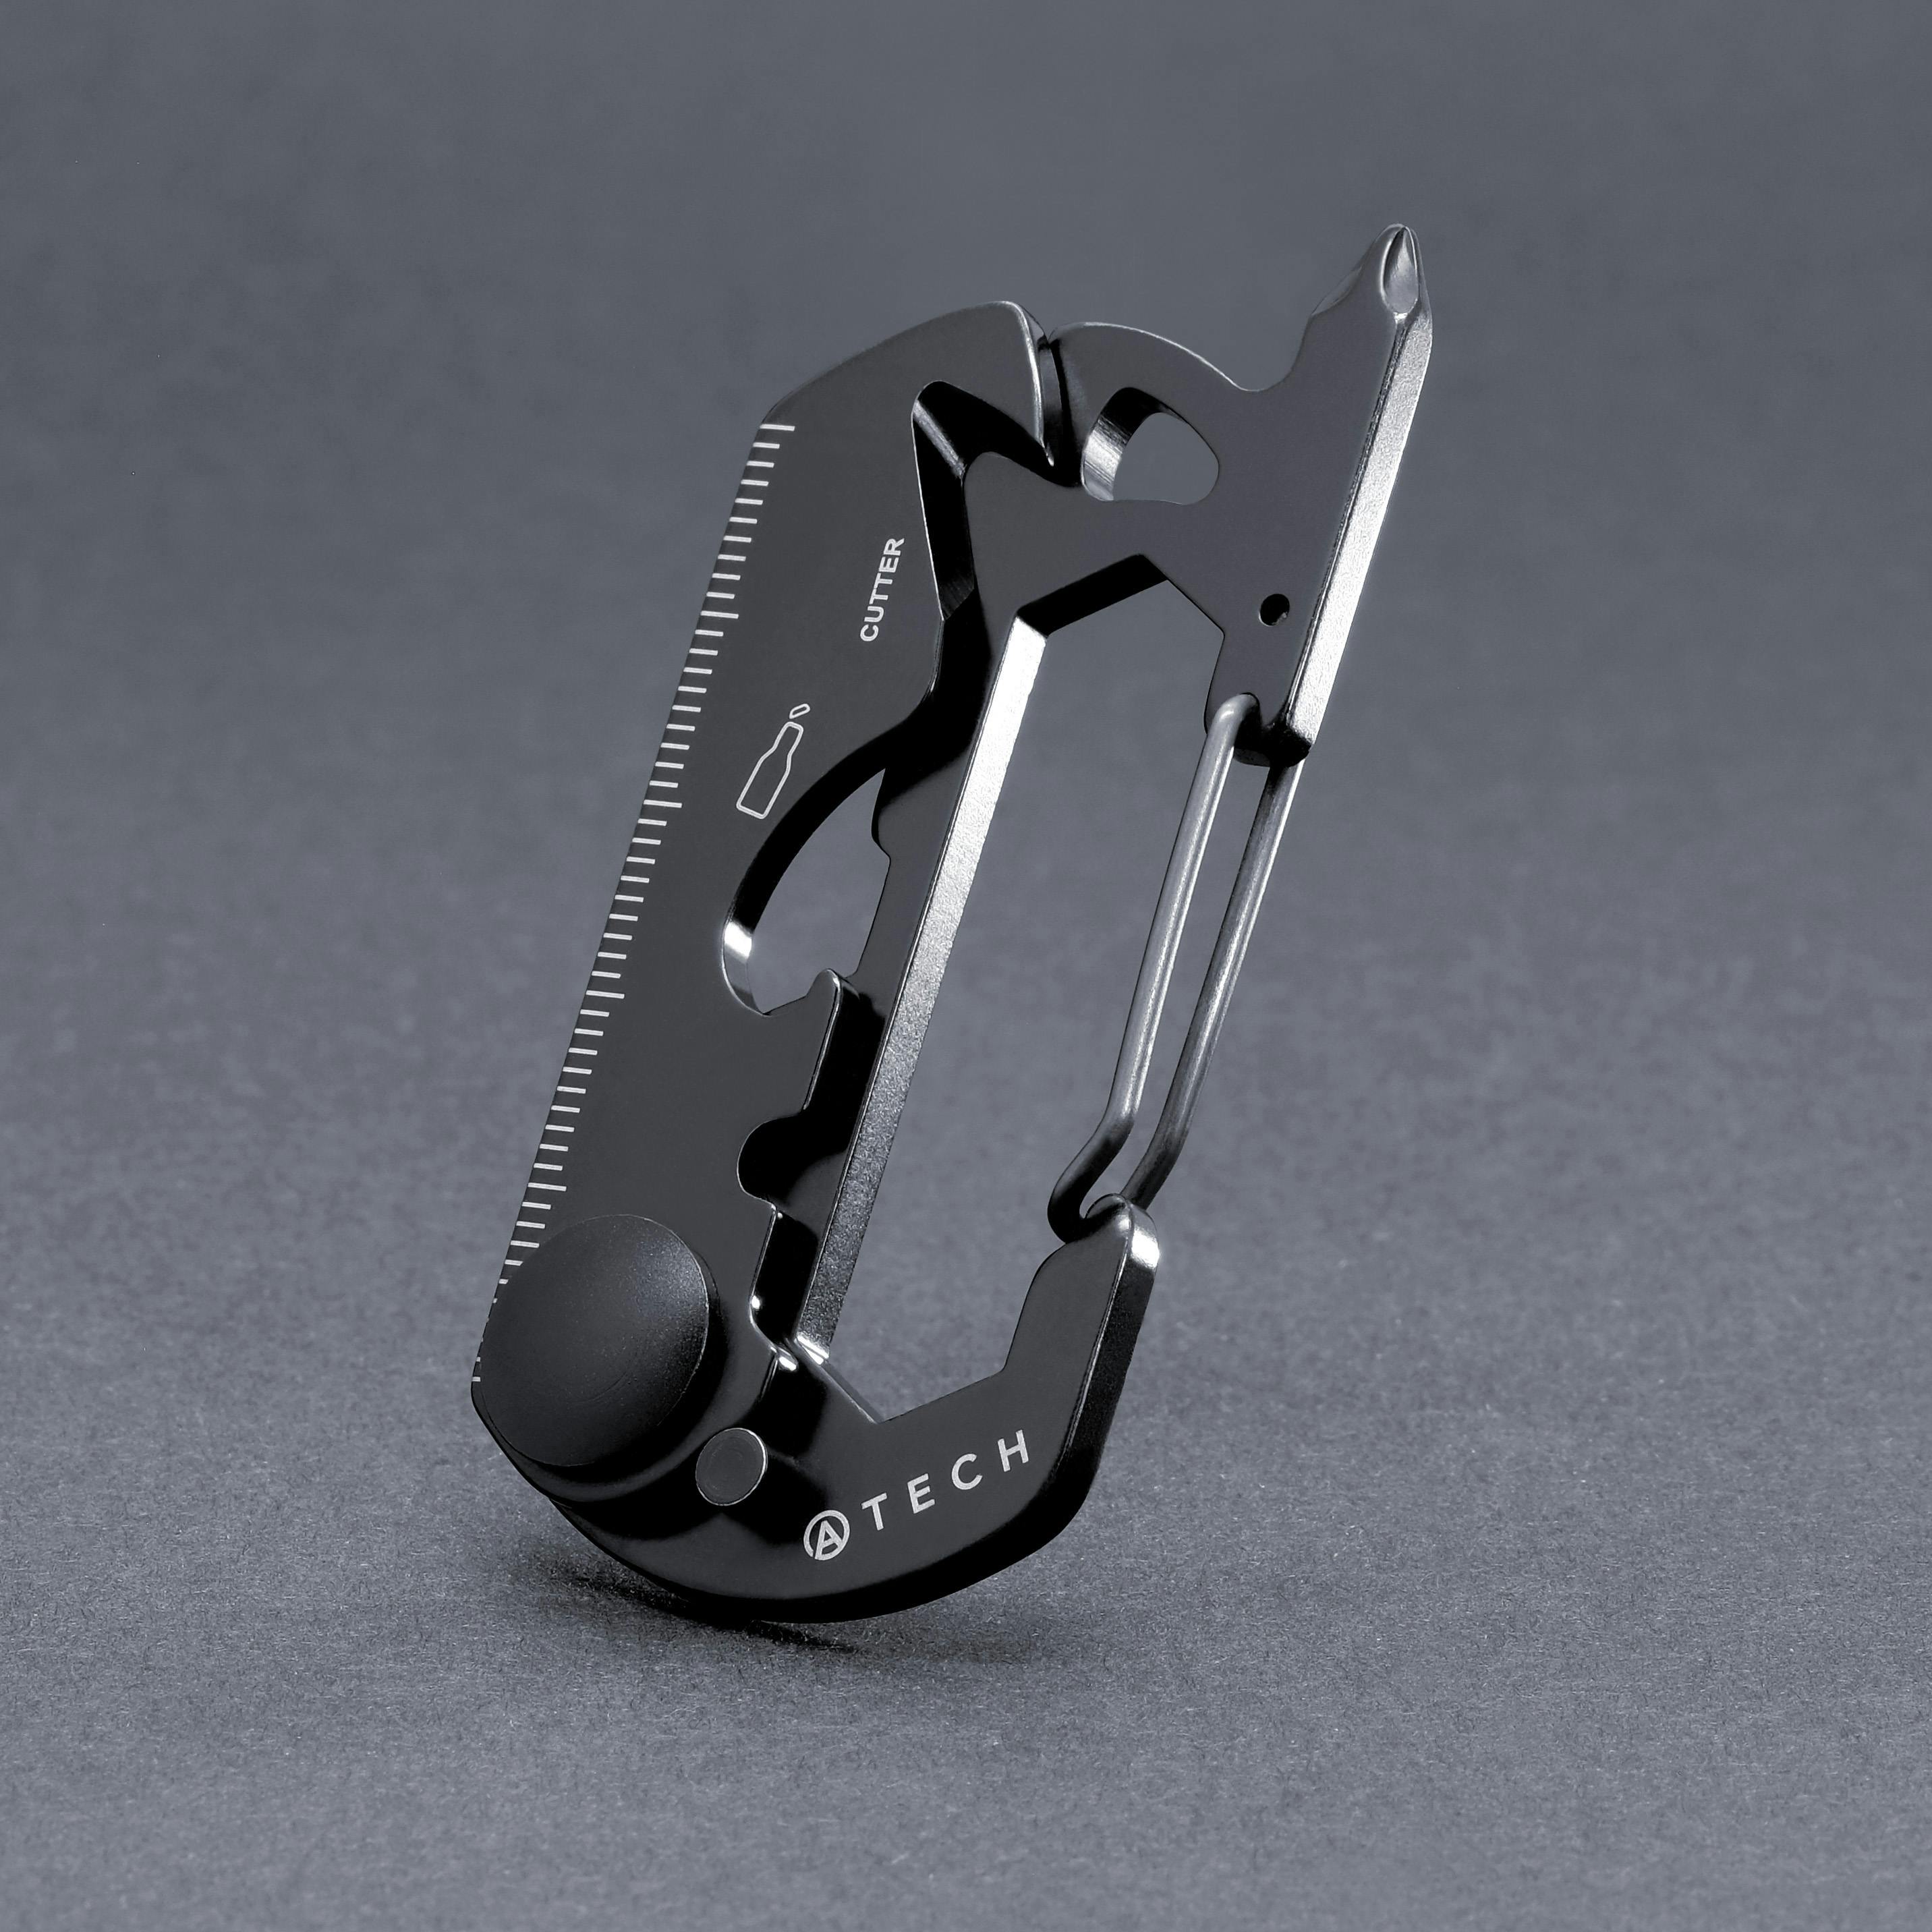 Atech Innovation Multi-Tool 10-in-1 Carabiner - Black, Pocket Tools